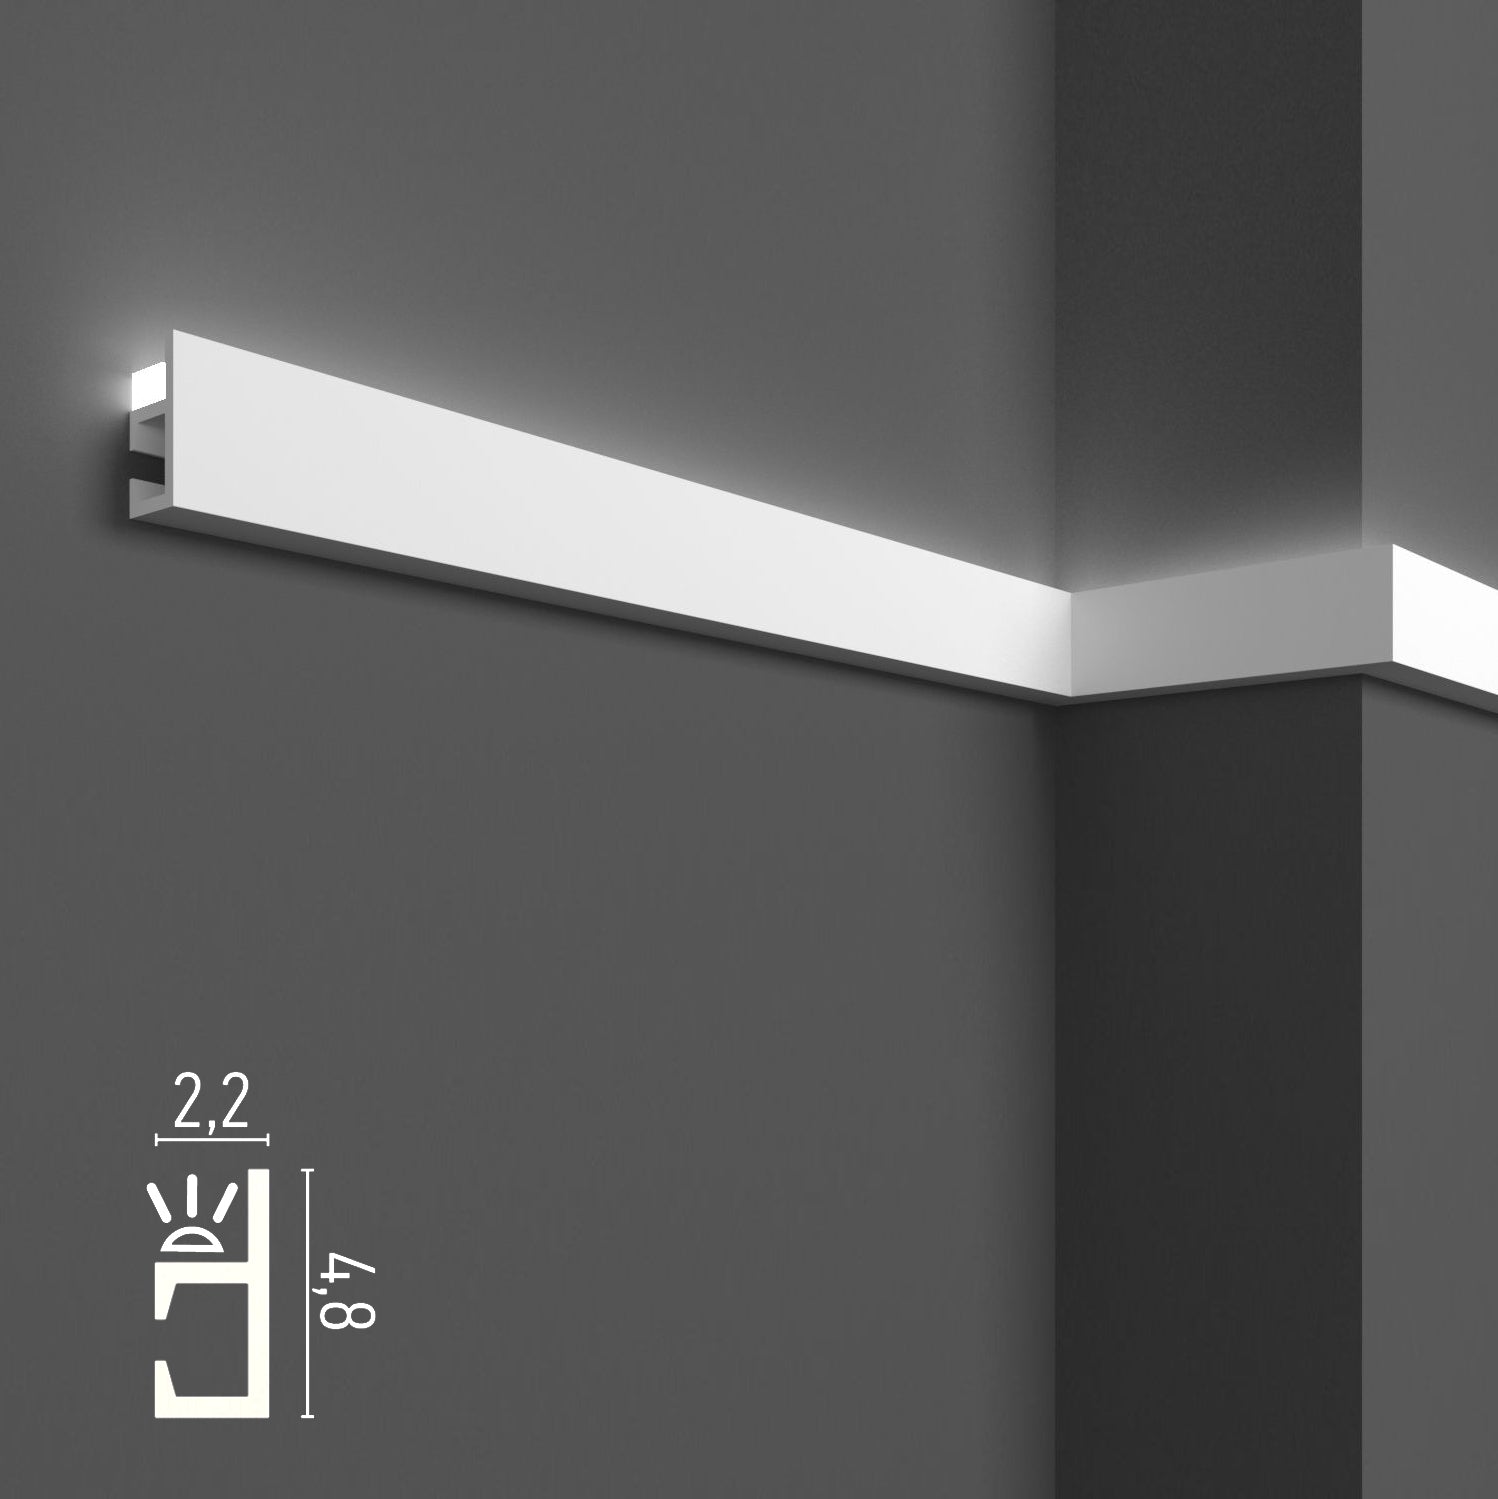 KH903 da 2 metri - Cornici velette per led a soffitto e parete, per illuminazione indiretta con le strisce led